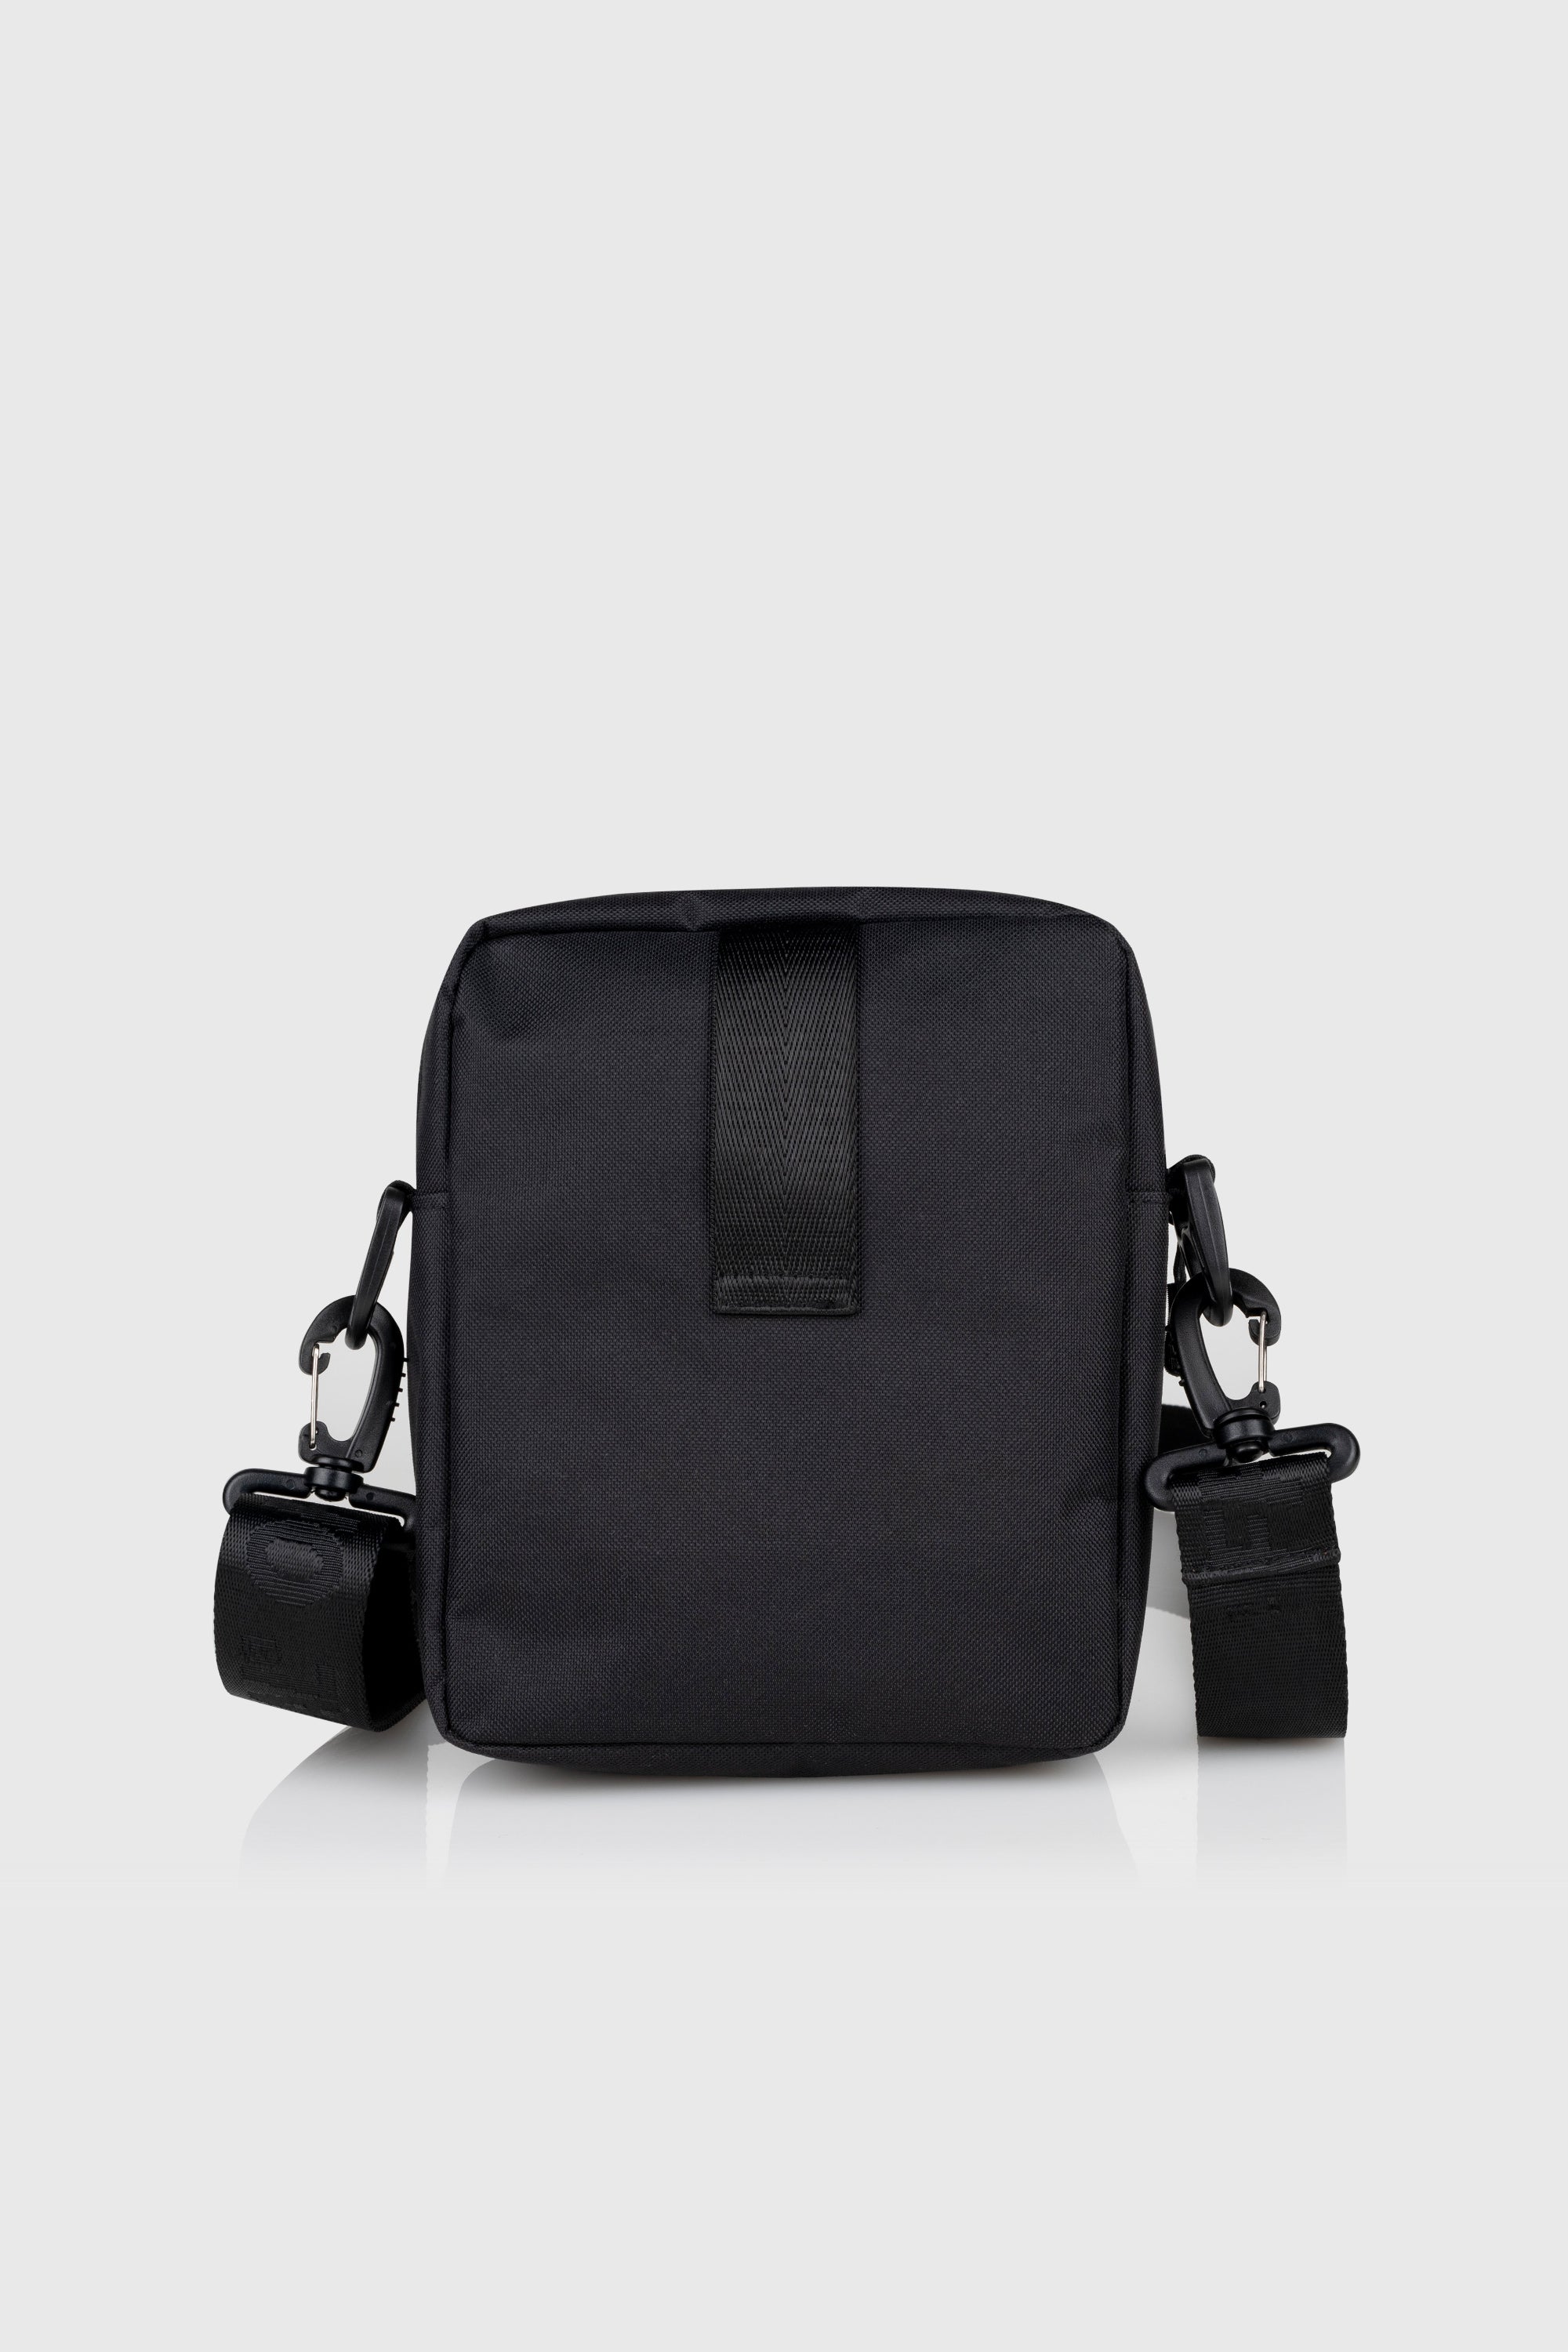 Essential Shoulder Bag (Black) - The Official Brand